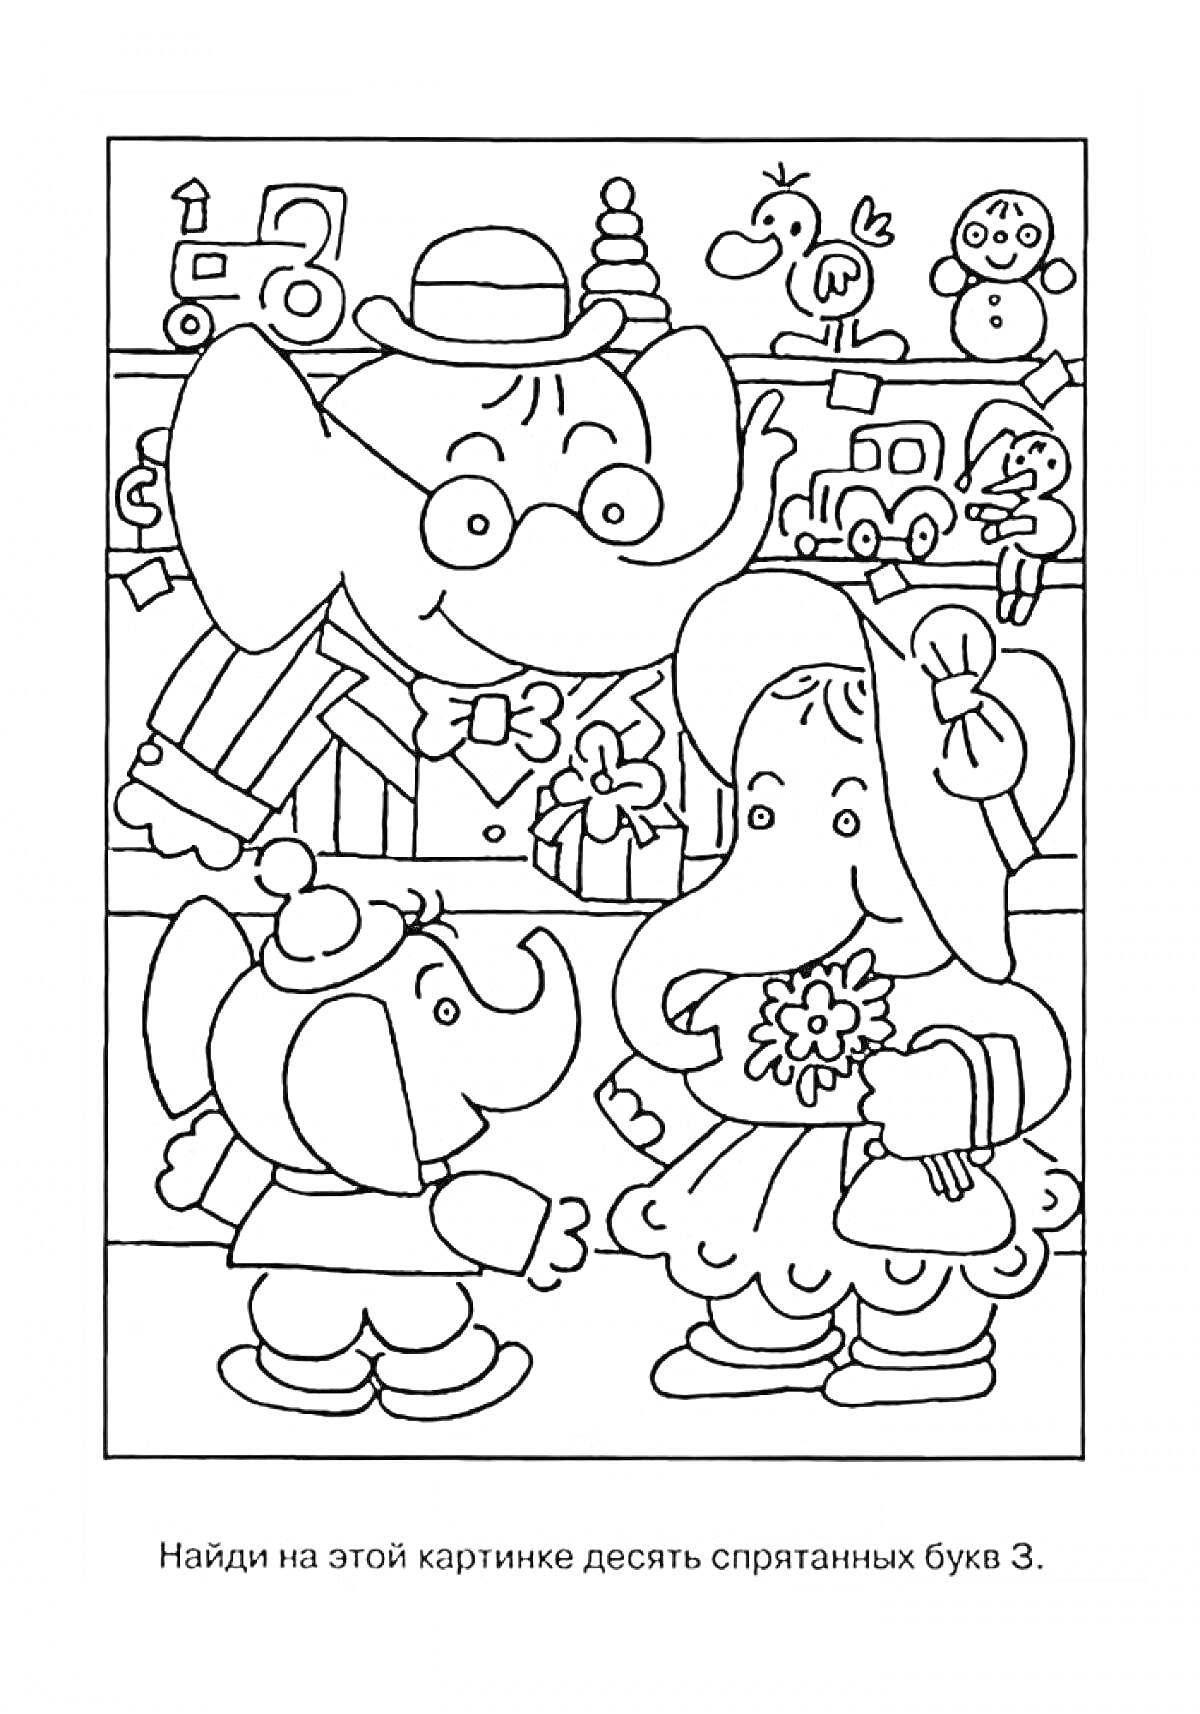 На раскраске изображено: Взрослые, Магазин игрушек, Буква З, Клоун, Поезд, Часы, Игрушки, Для детей, Слон